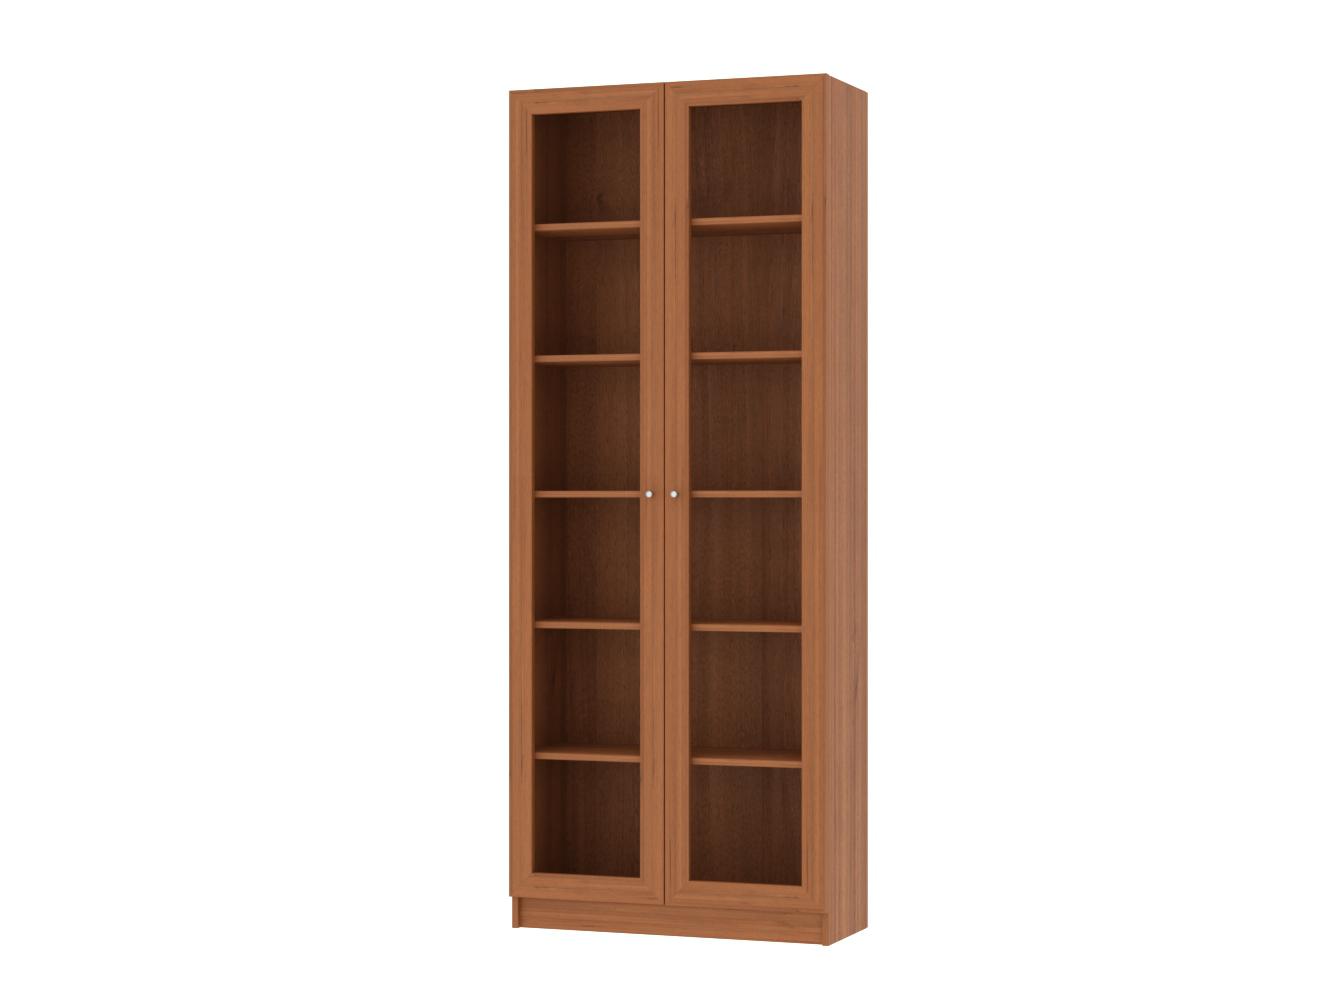 Изображение товара Книжный шкаф Билли 20 walnut guarneri ИКЕА (IKEA), 80x30x202 см на сайте adeta.ru